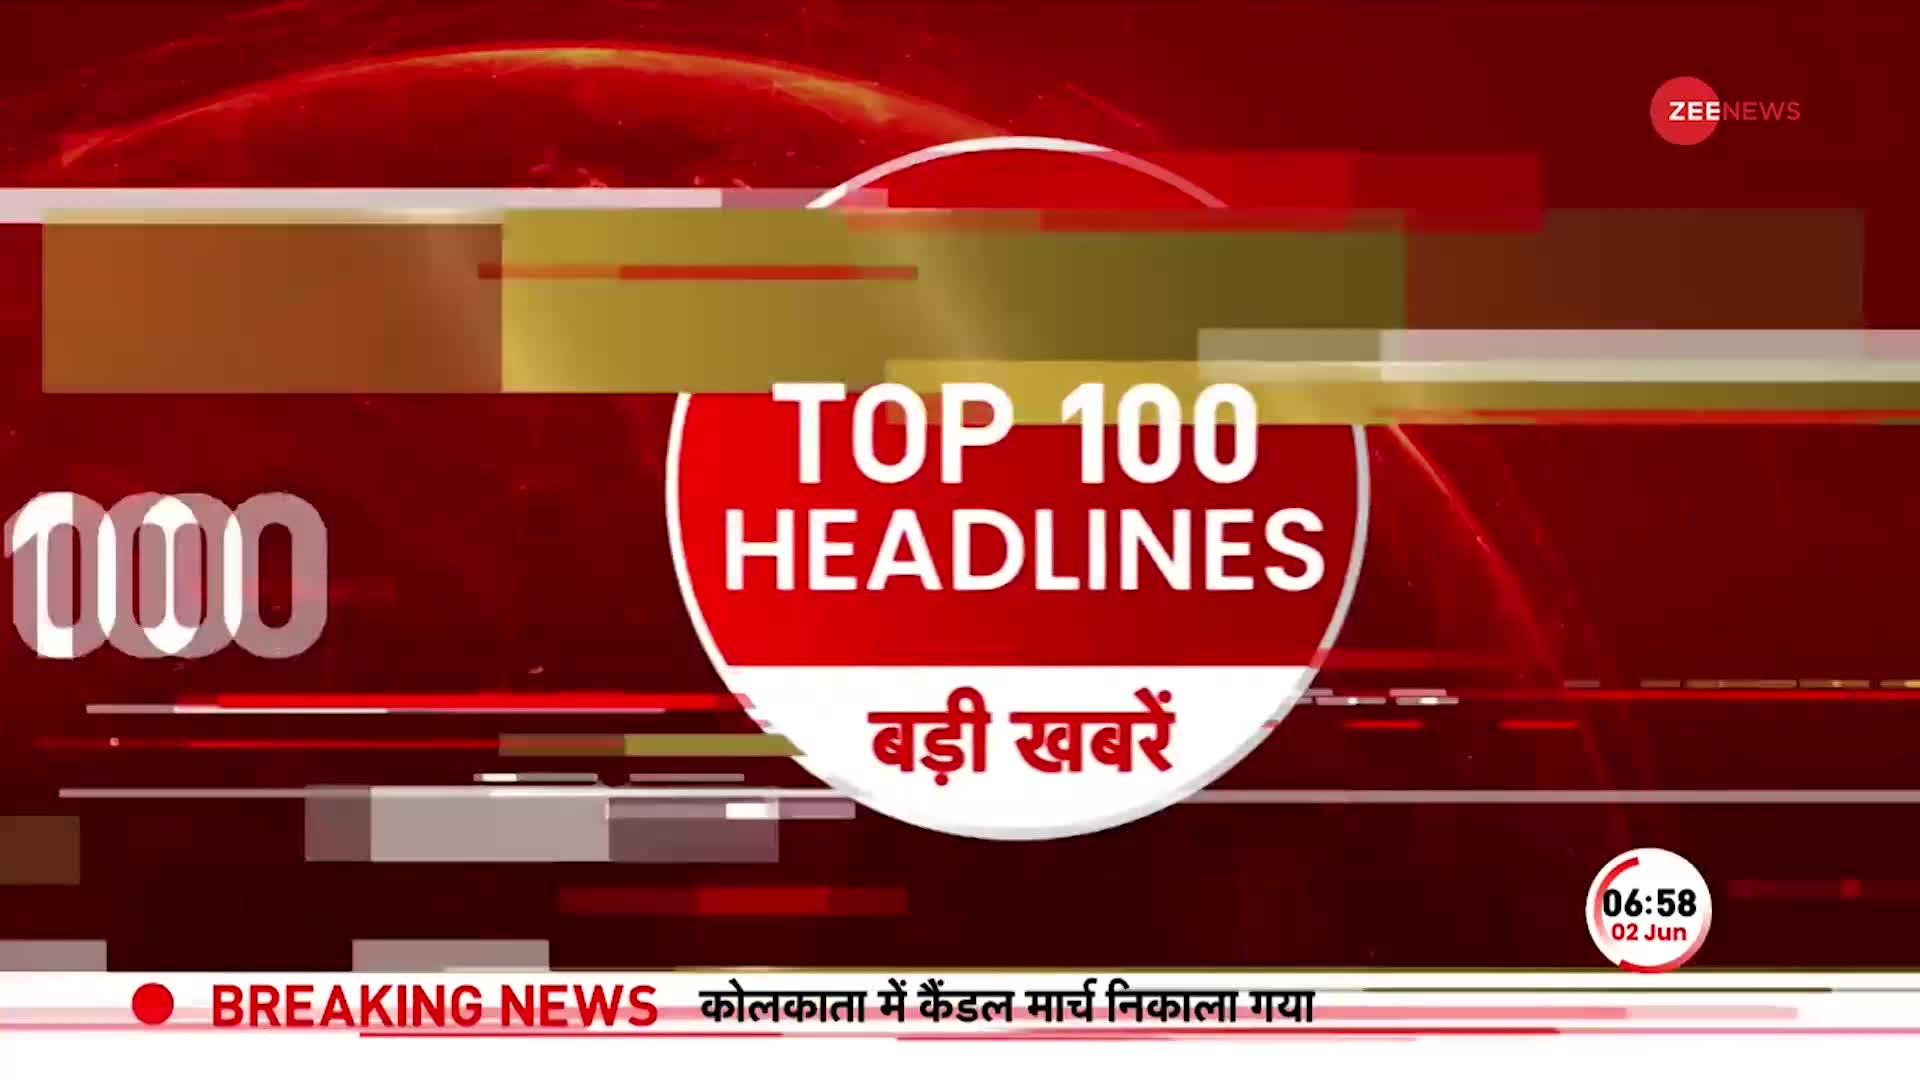 TOP 100: सुबह की 100 बड़ी खबरें सुपरफास्ट अंदाज में | Wrestlers Protest | Rahul Gandhi | Sakshi Case